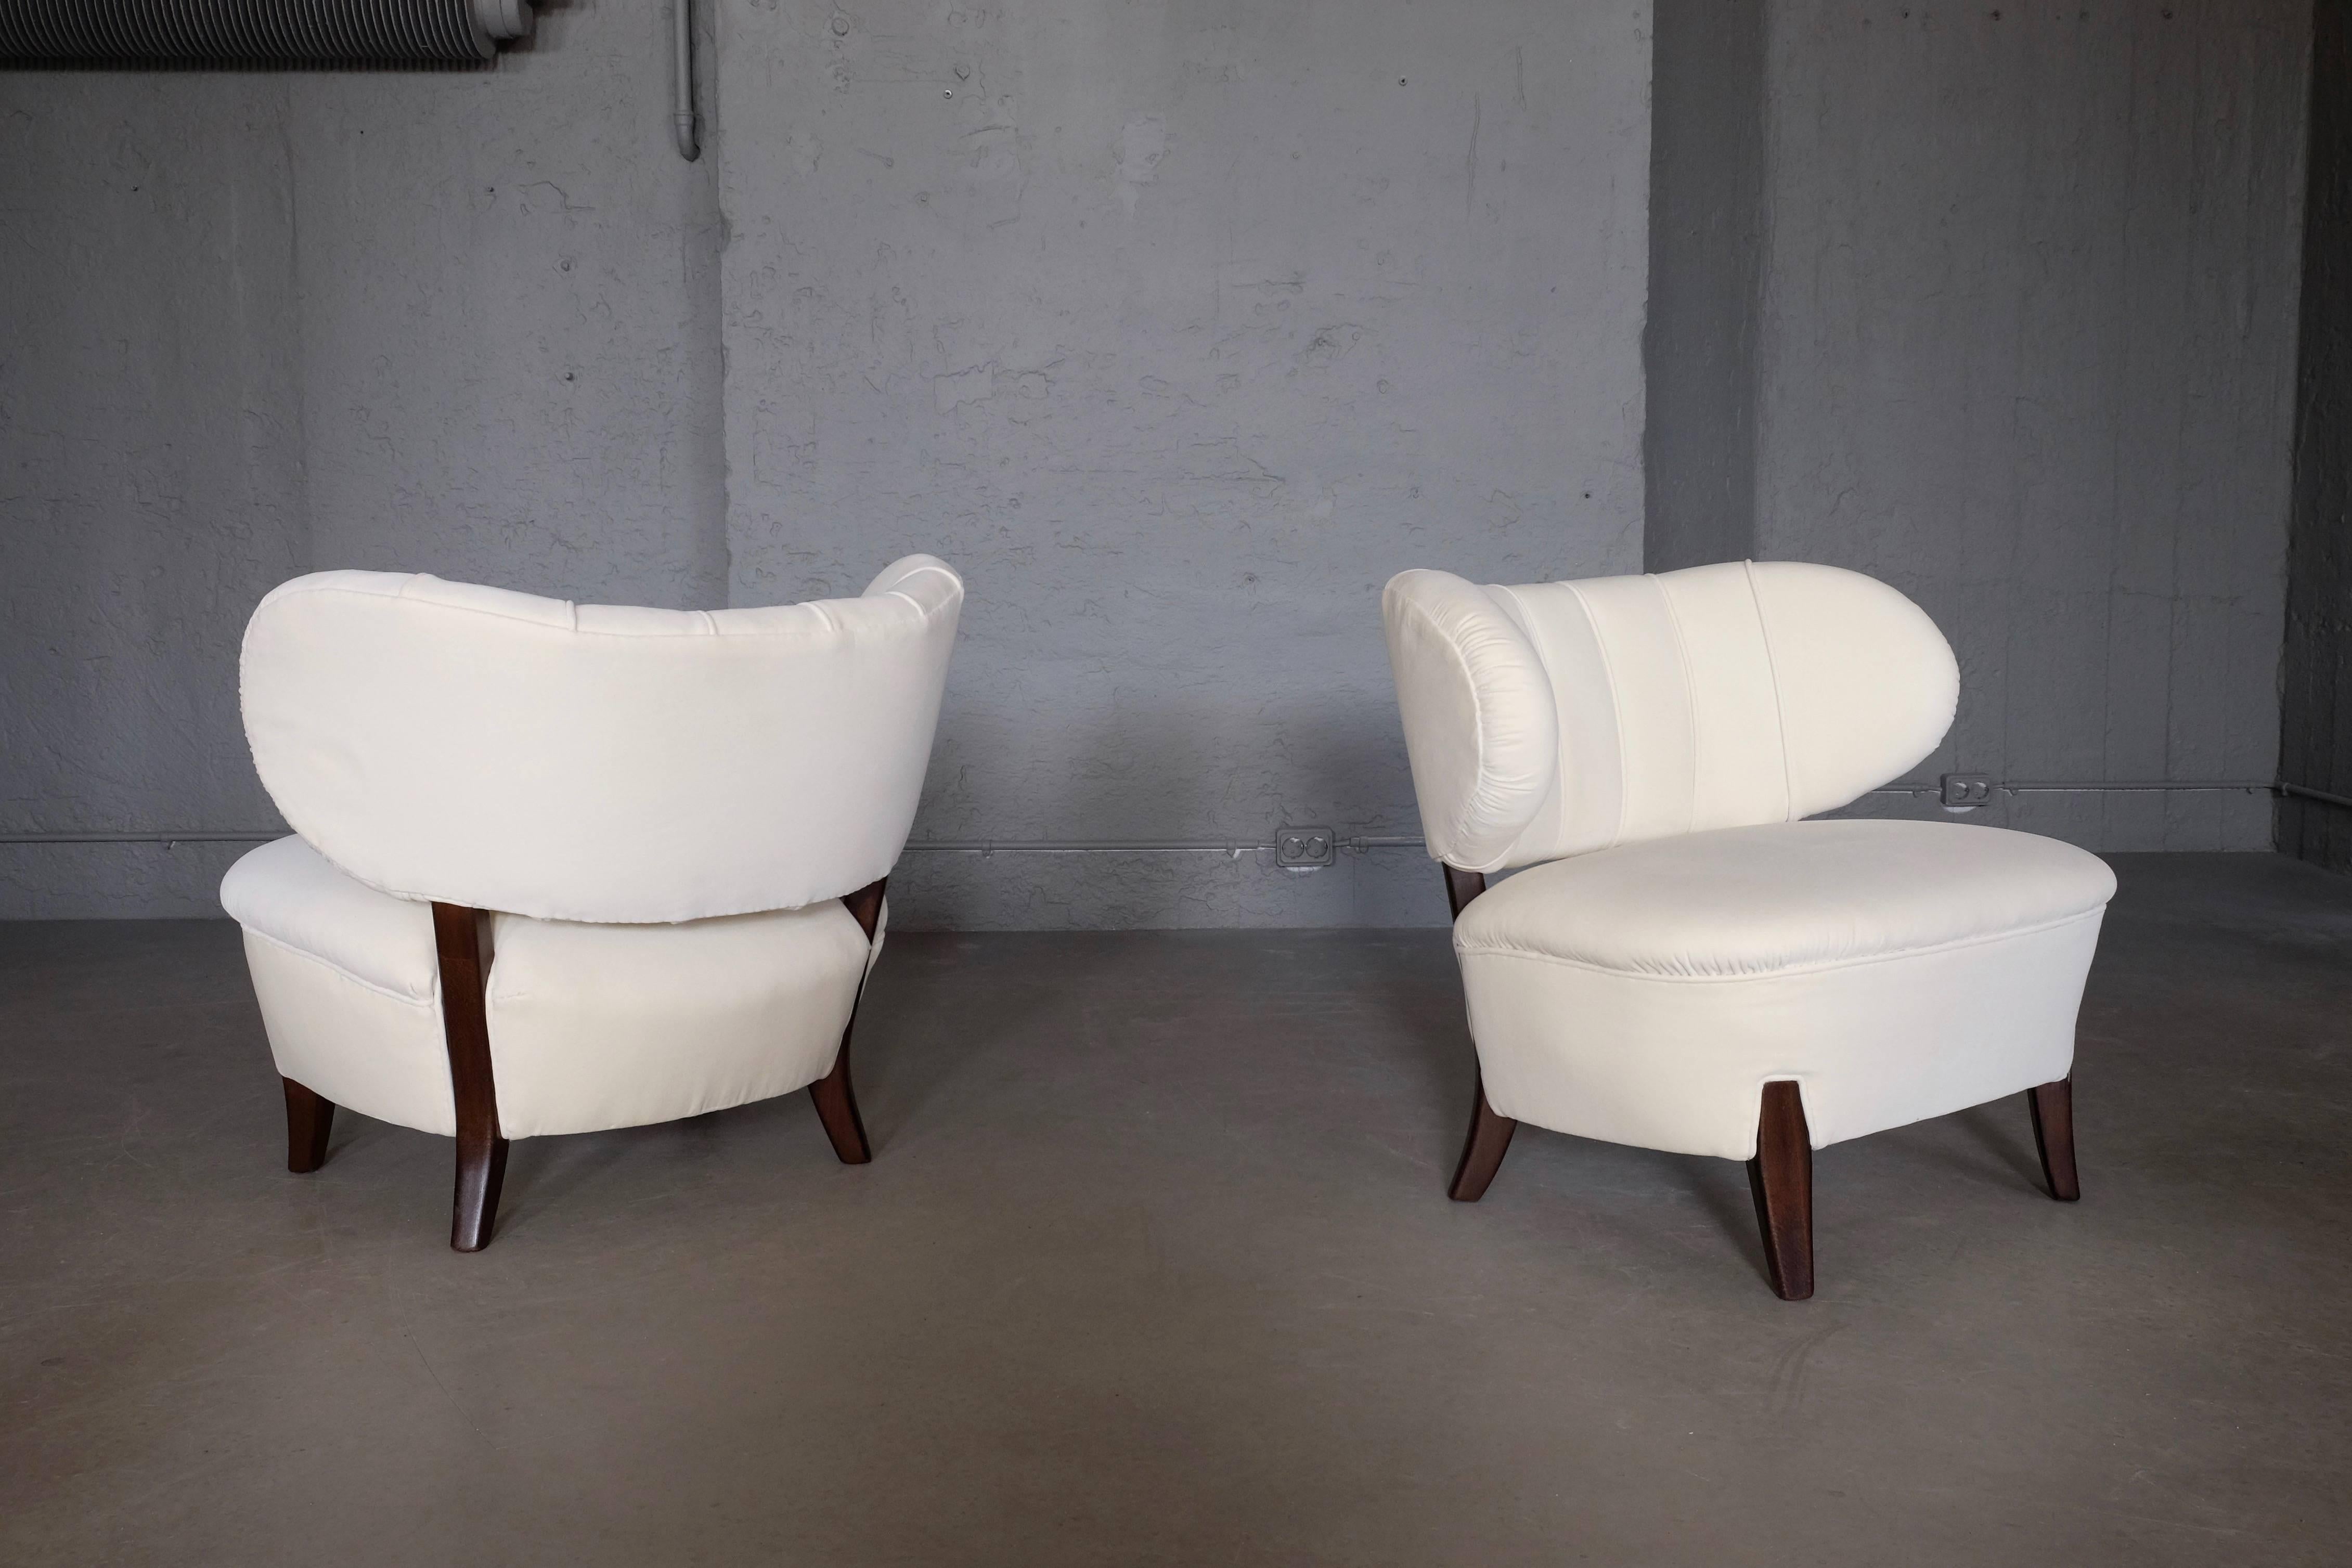 Schöne Sessel aus elfenbeinweißem Samt von Otto Schulz, Boet, Schweden, 1930er Jahre.
Neu gepolstert und restauriert, ausgezeichneter Zustand.
Weltweiter Versand: USD 499.
    